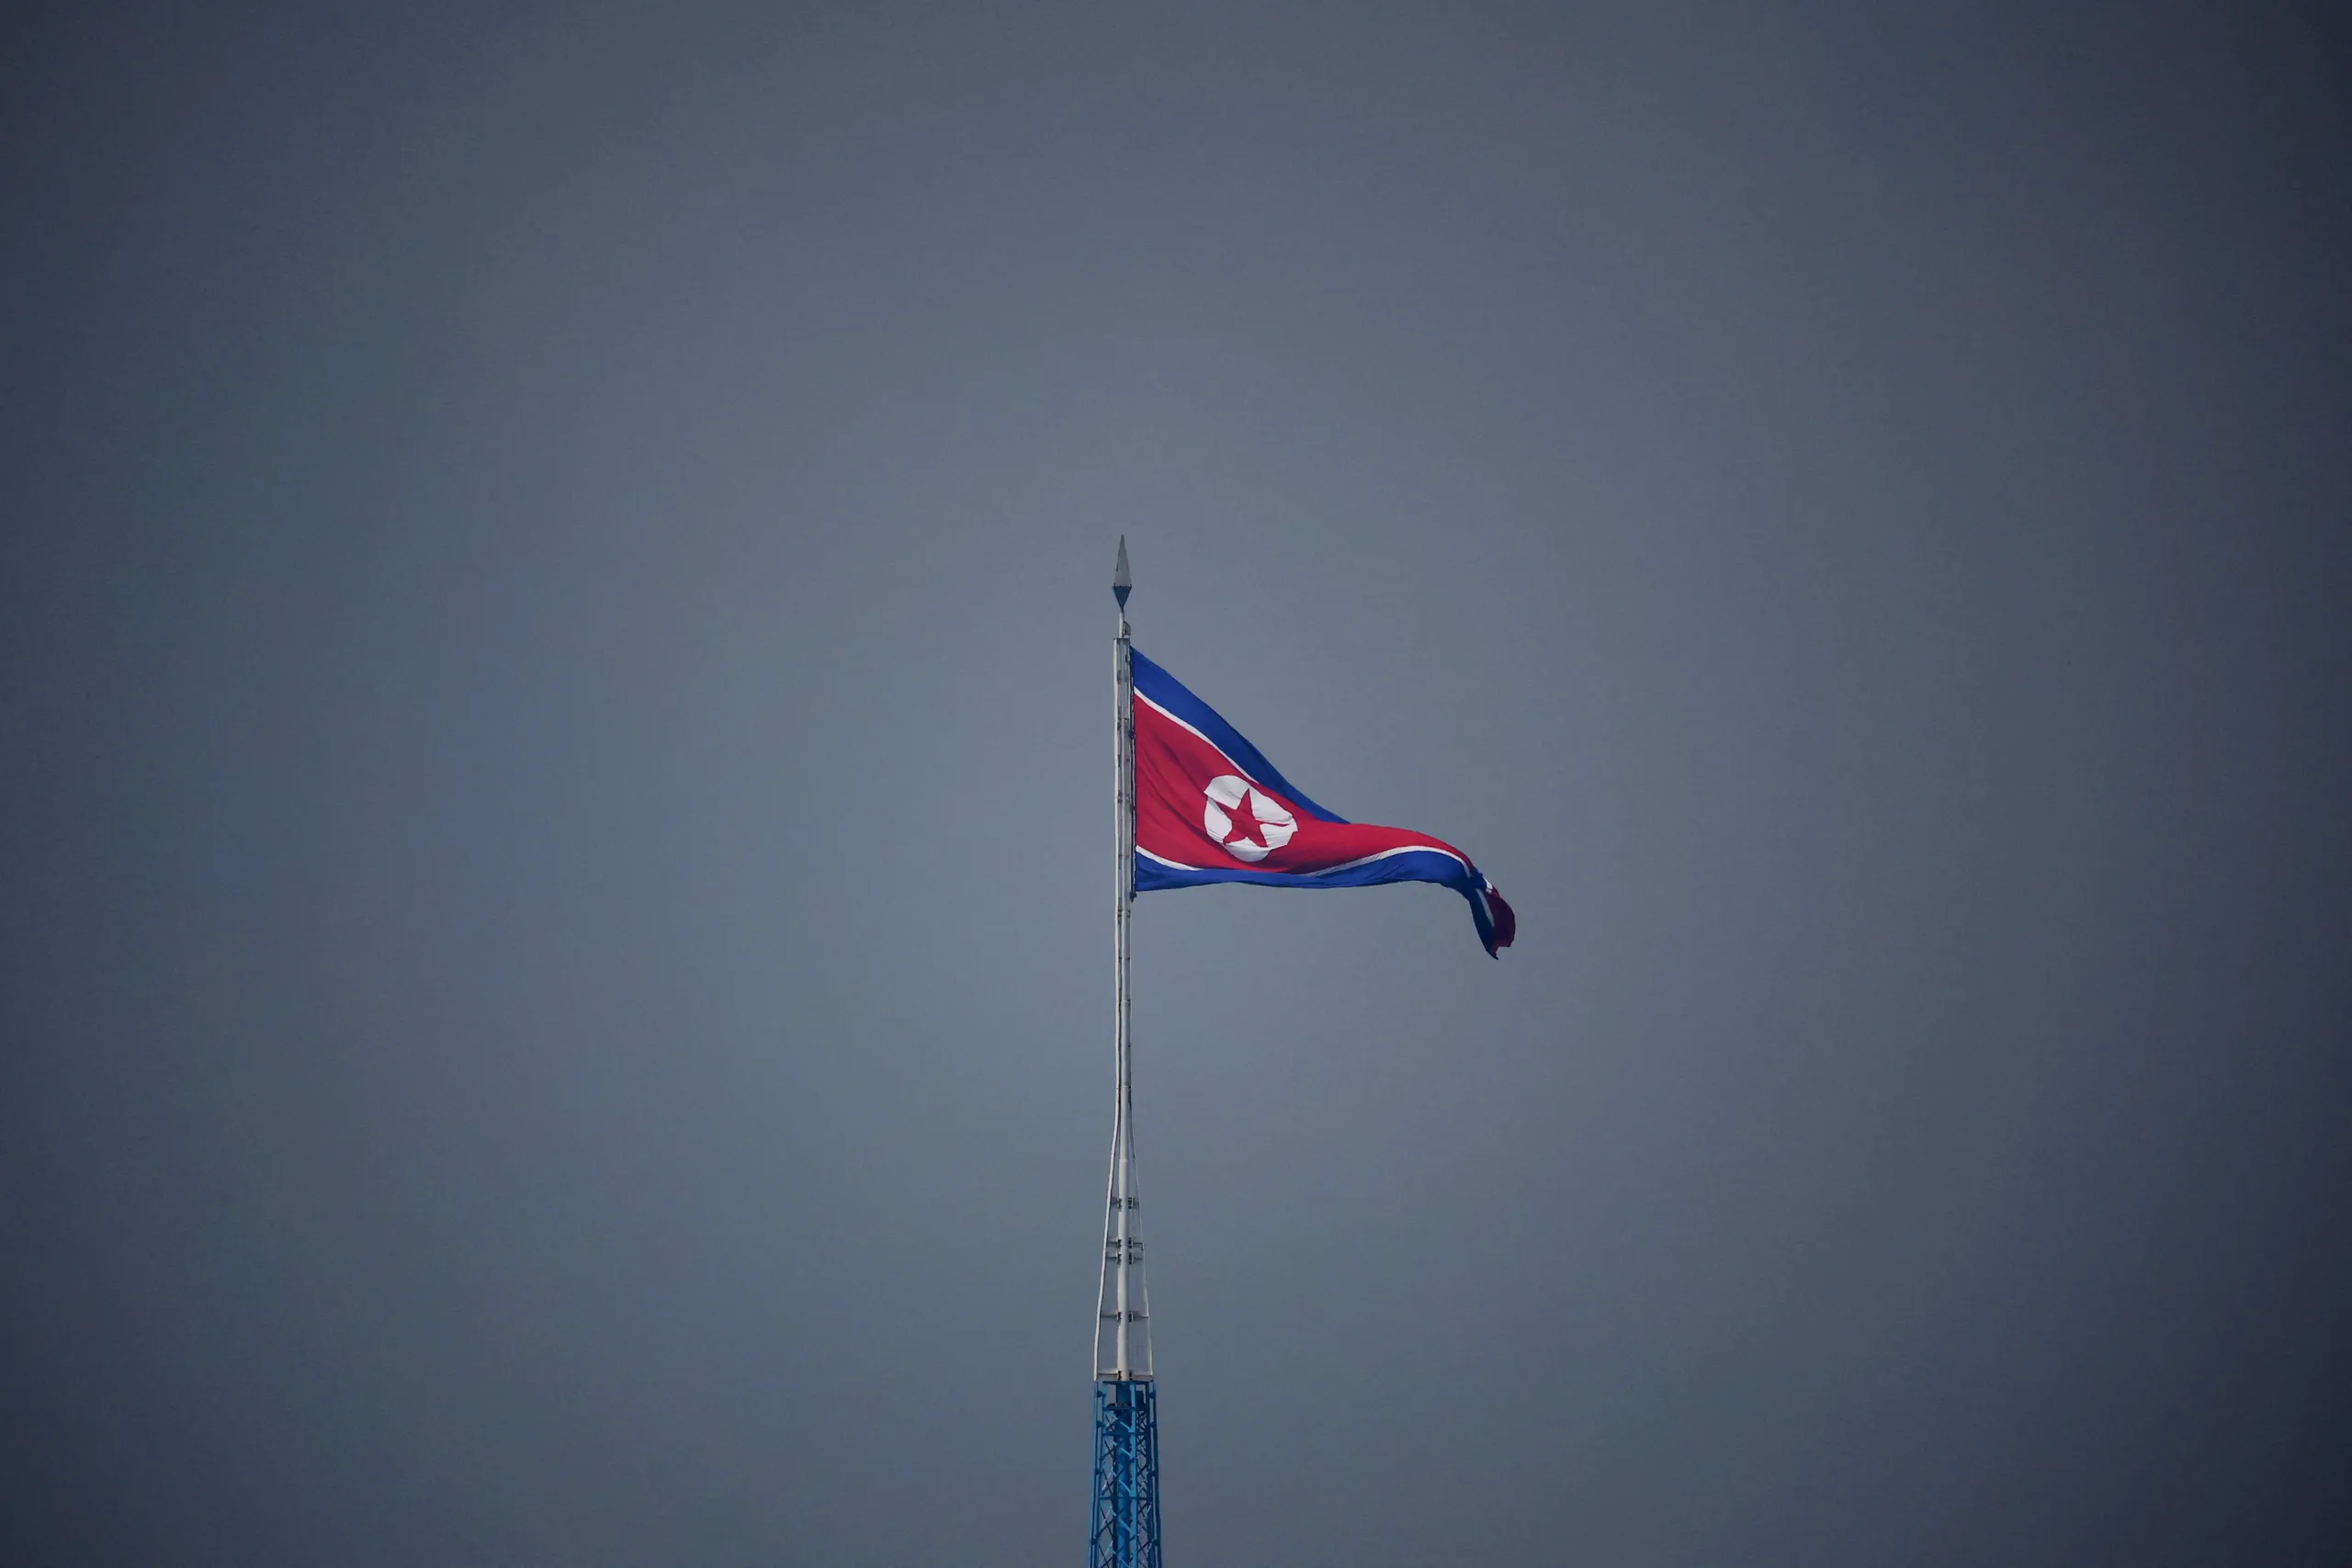 Moradores sul-coreanos na fronteira com Coreia do Norte temem aumento nas tensões